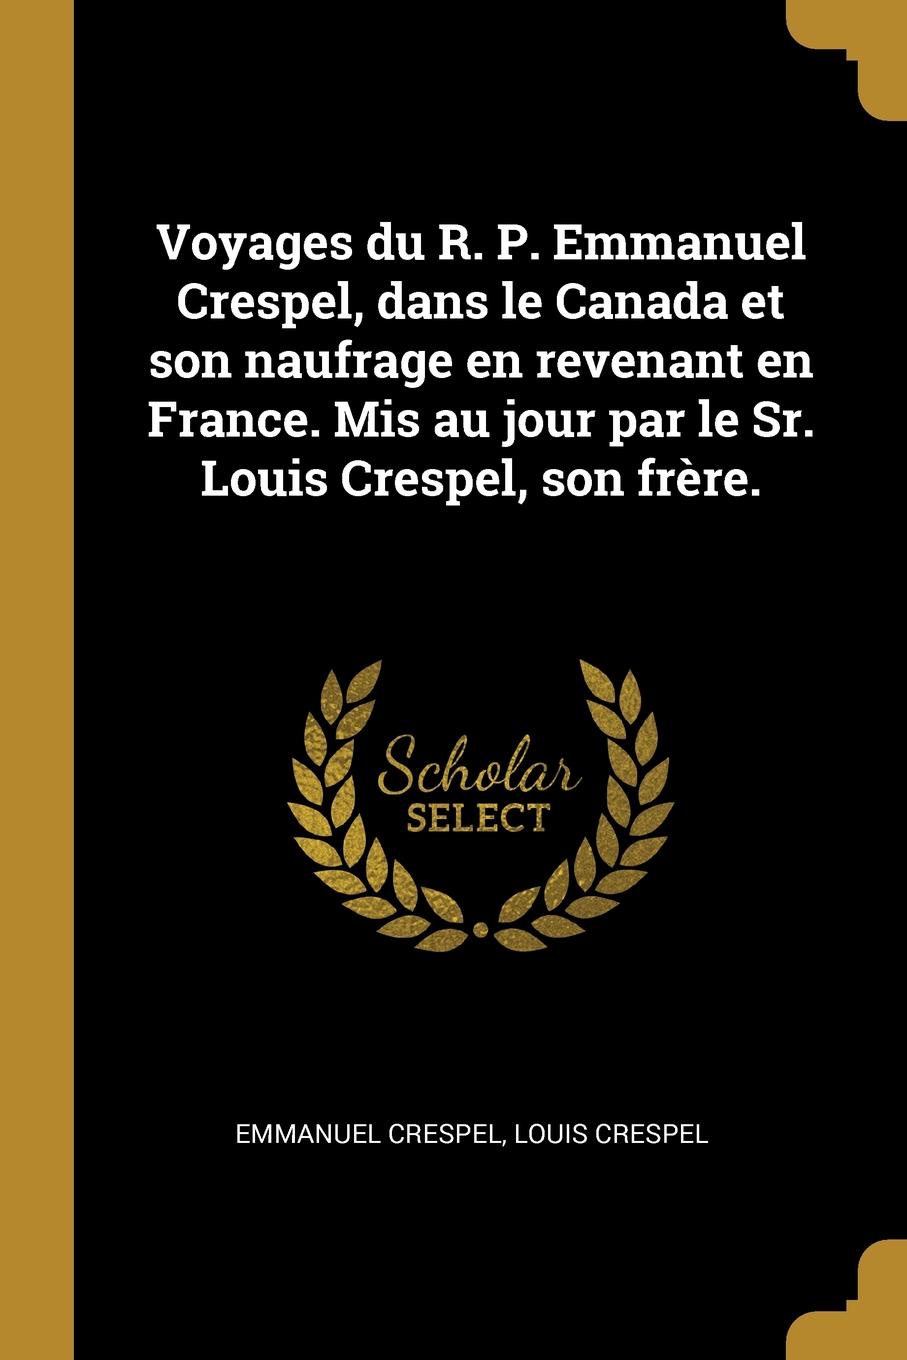 Voyages du R. P. Emmanuel Crespel, dans le Canada et son naufrage en revenant en France. Mis au jour par le Sr. Louis Crespel, son frere.